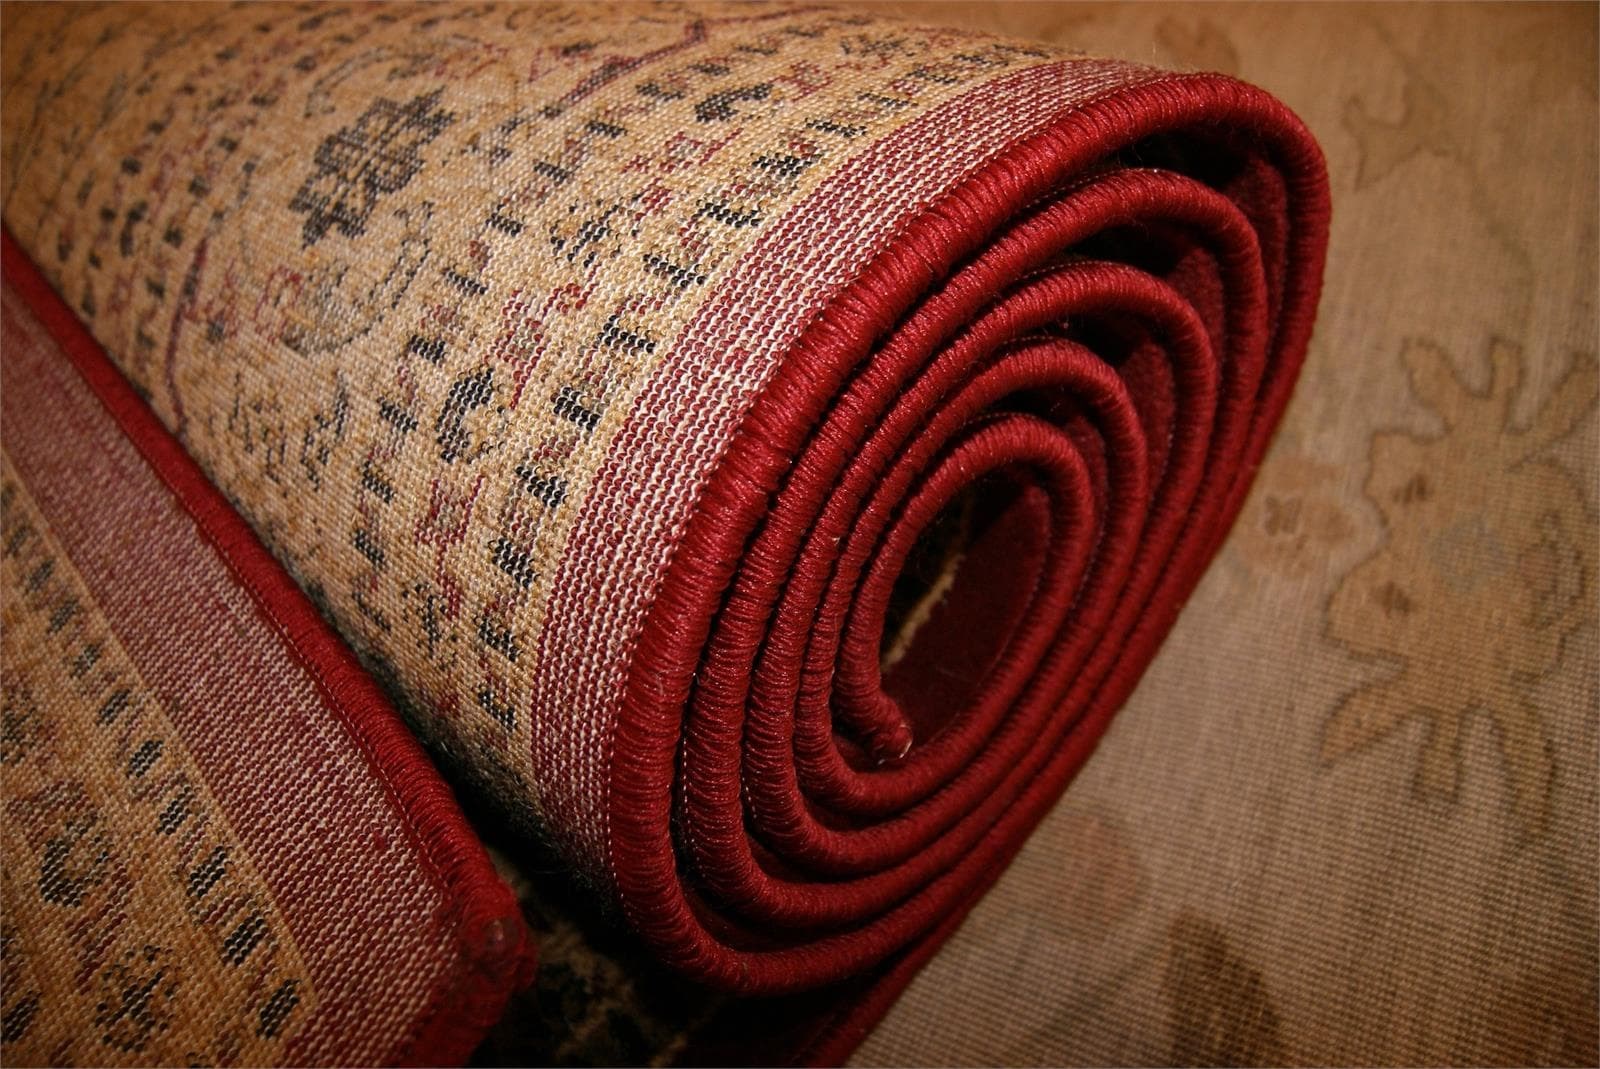 ¿Cómo puedo elegir una alfombra adecuada para mi casa? - Imagen 1